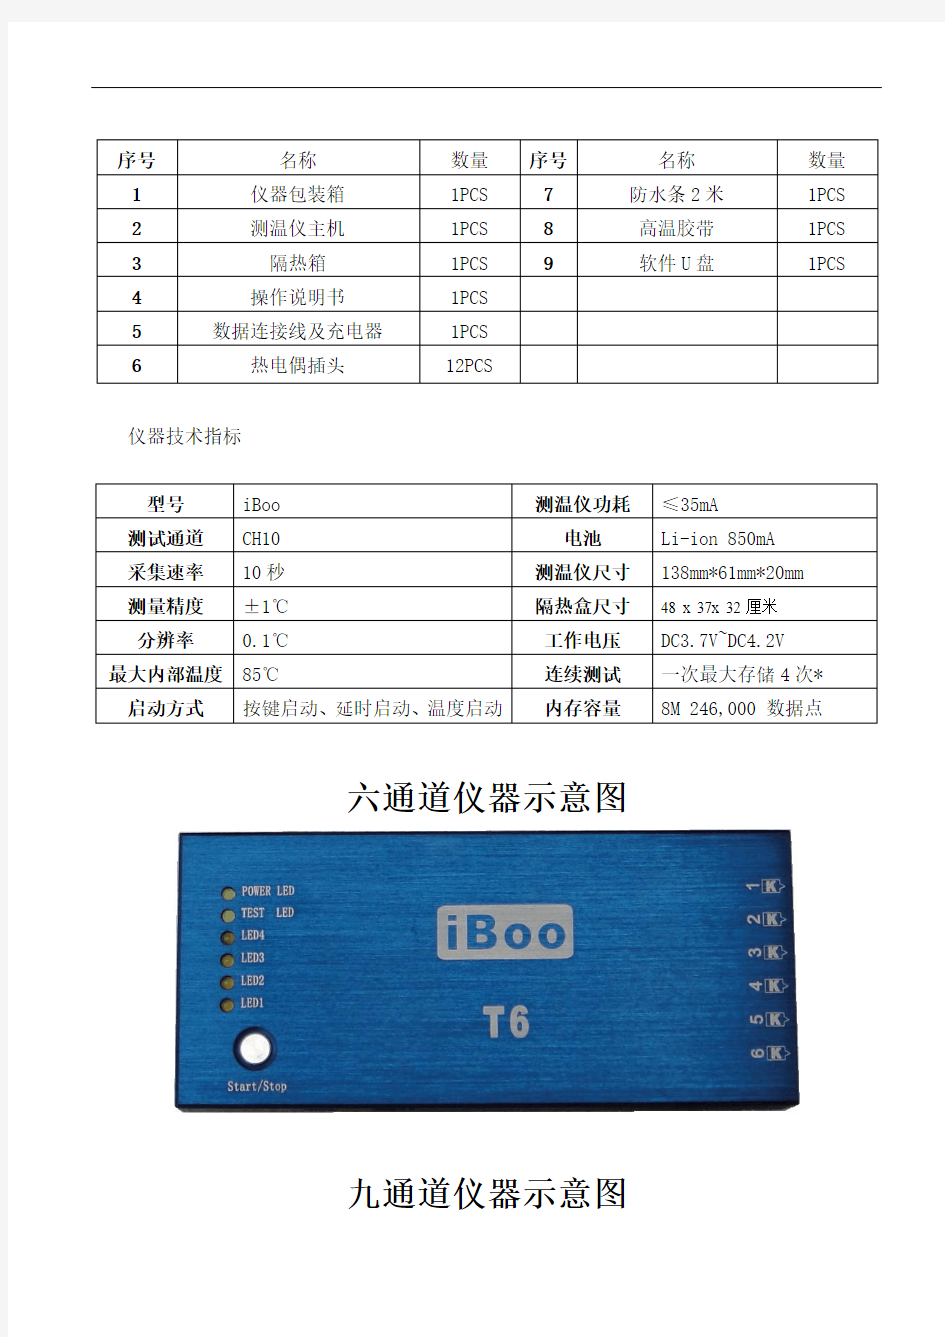 iboo炉温跟踪仪综合资料及详细方案